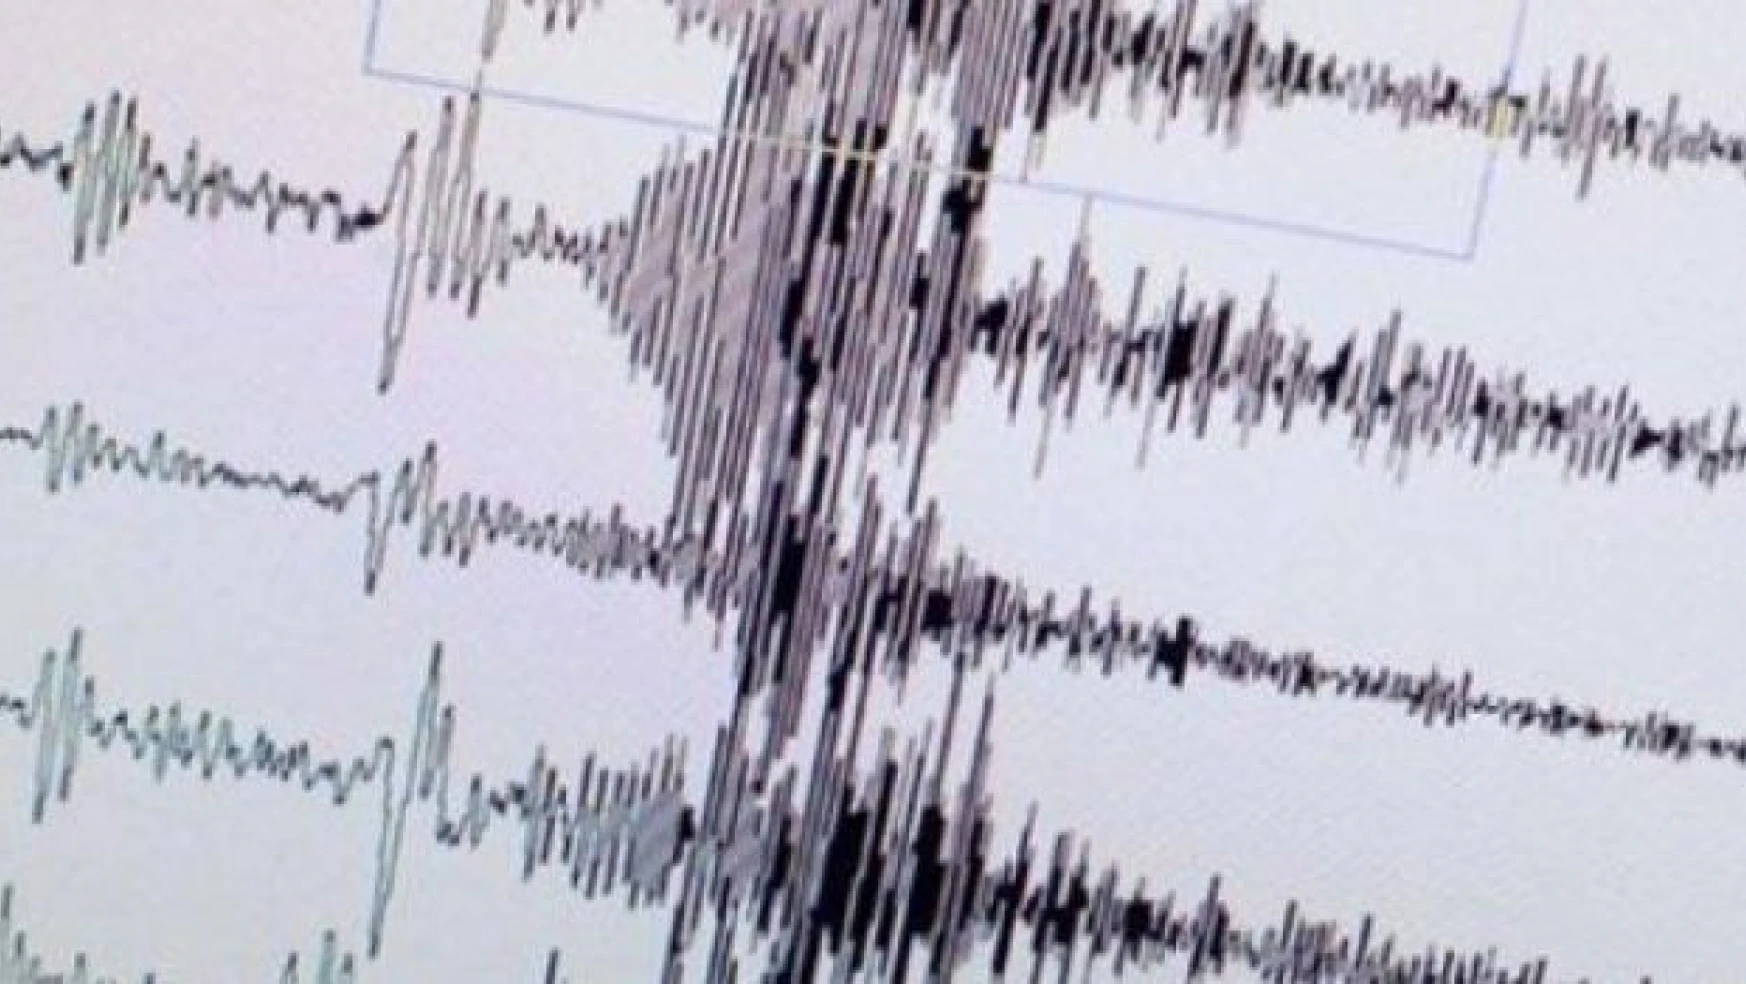 Çanakkale'de korkutan depremler